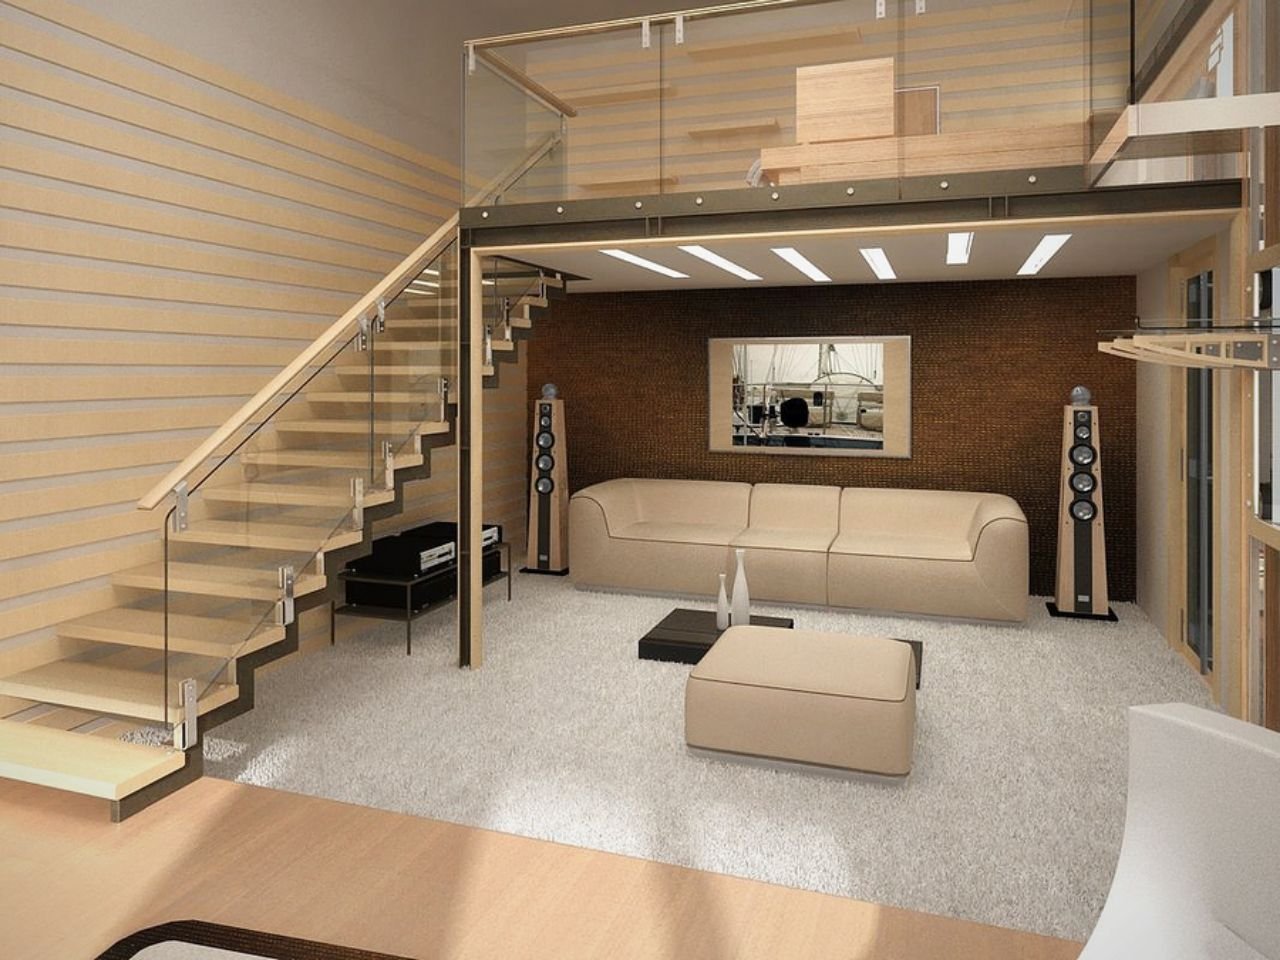 Лестница на второй этаж в частном доме: виды, формы, материалы, отделка, цвет, стили